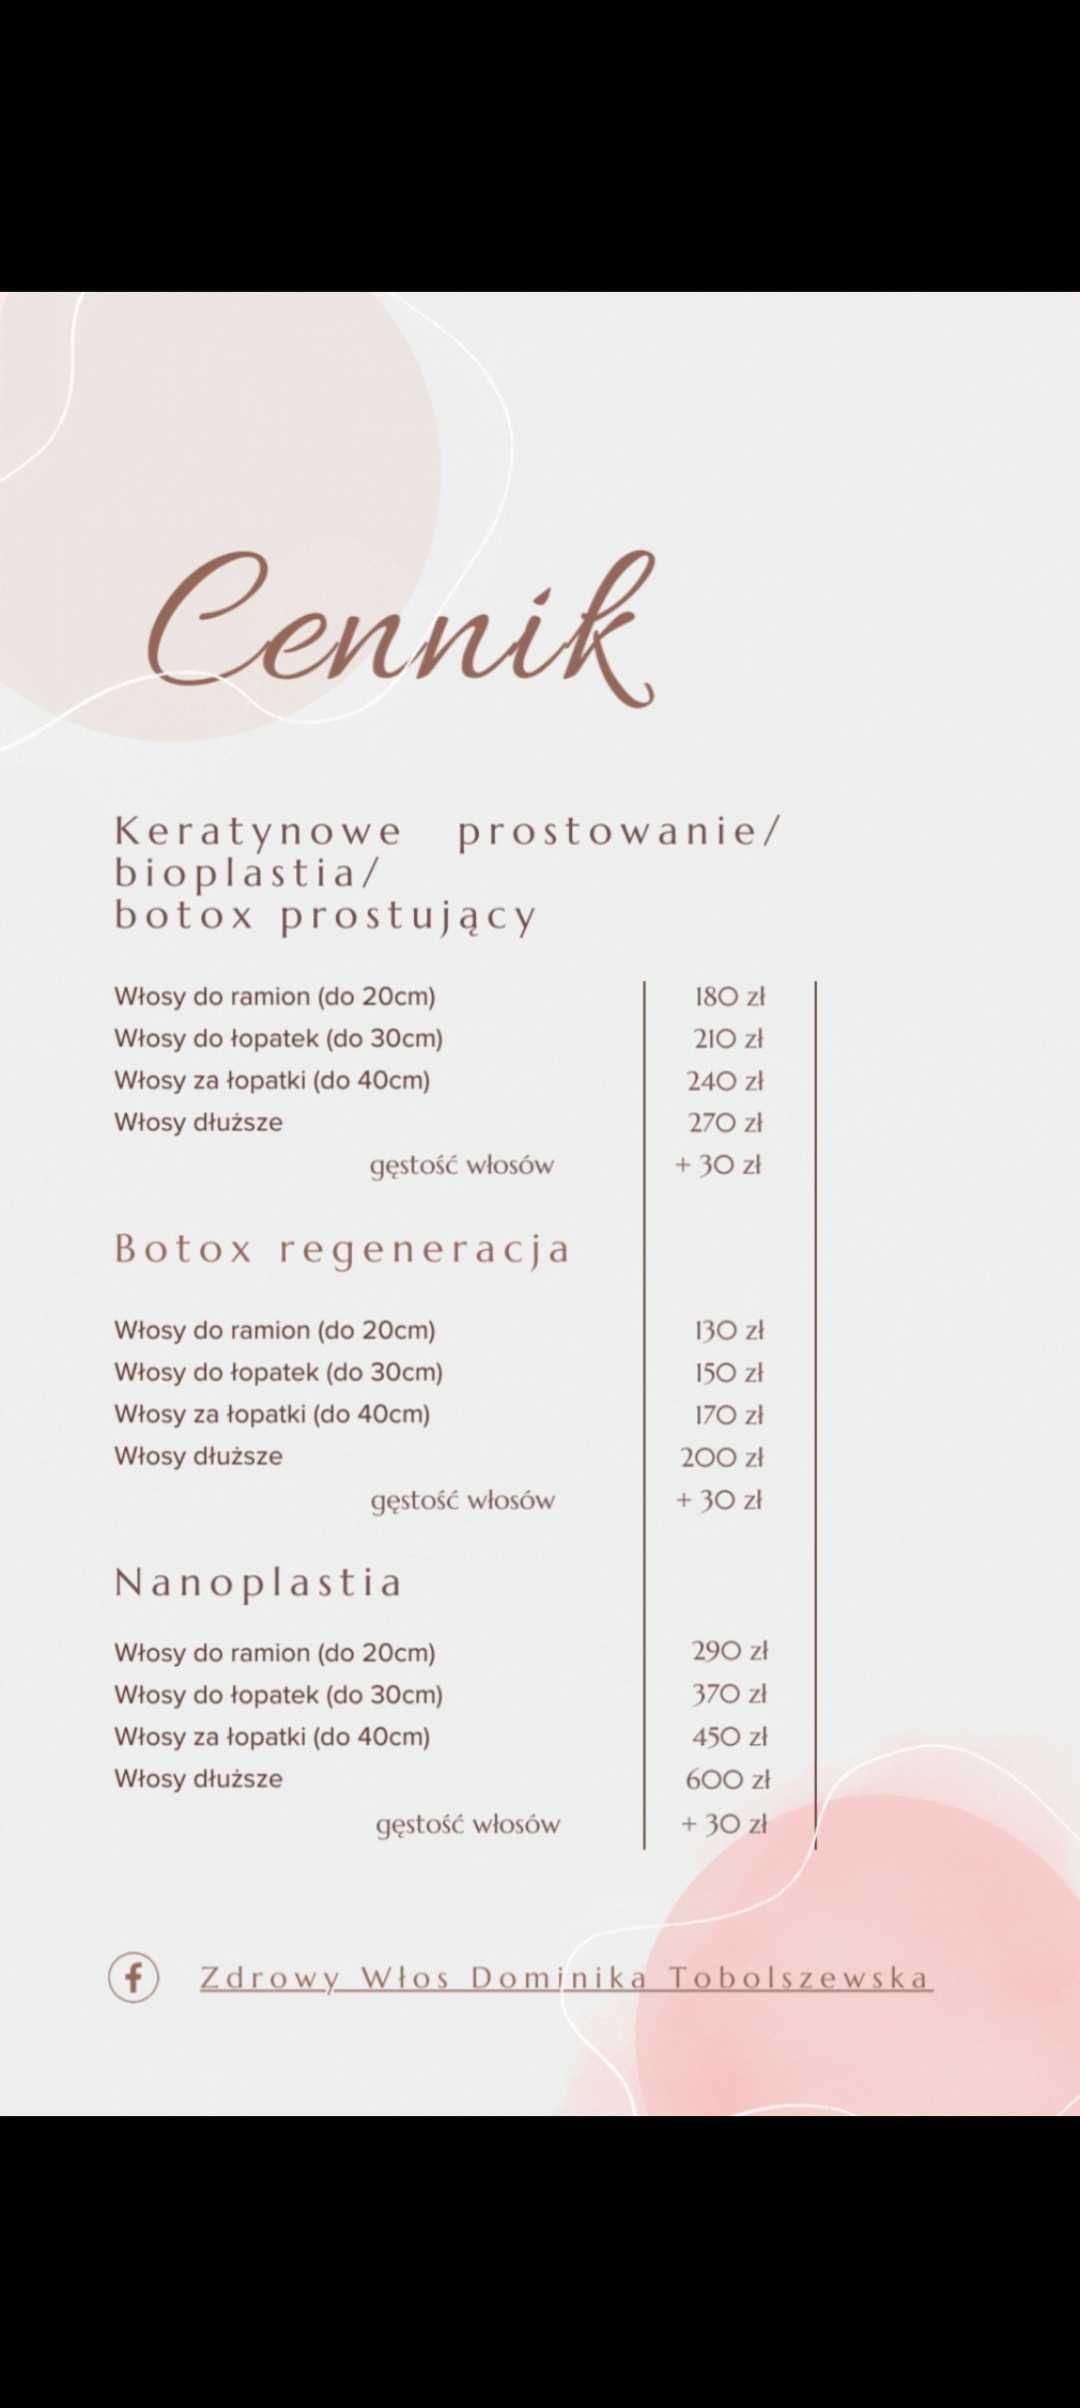 PROMOCJA  Keratynowe prostowanie / Botox/Bioplastia/Nanoplastia